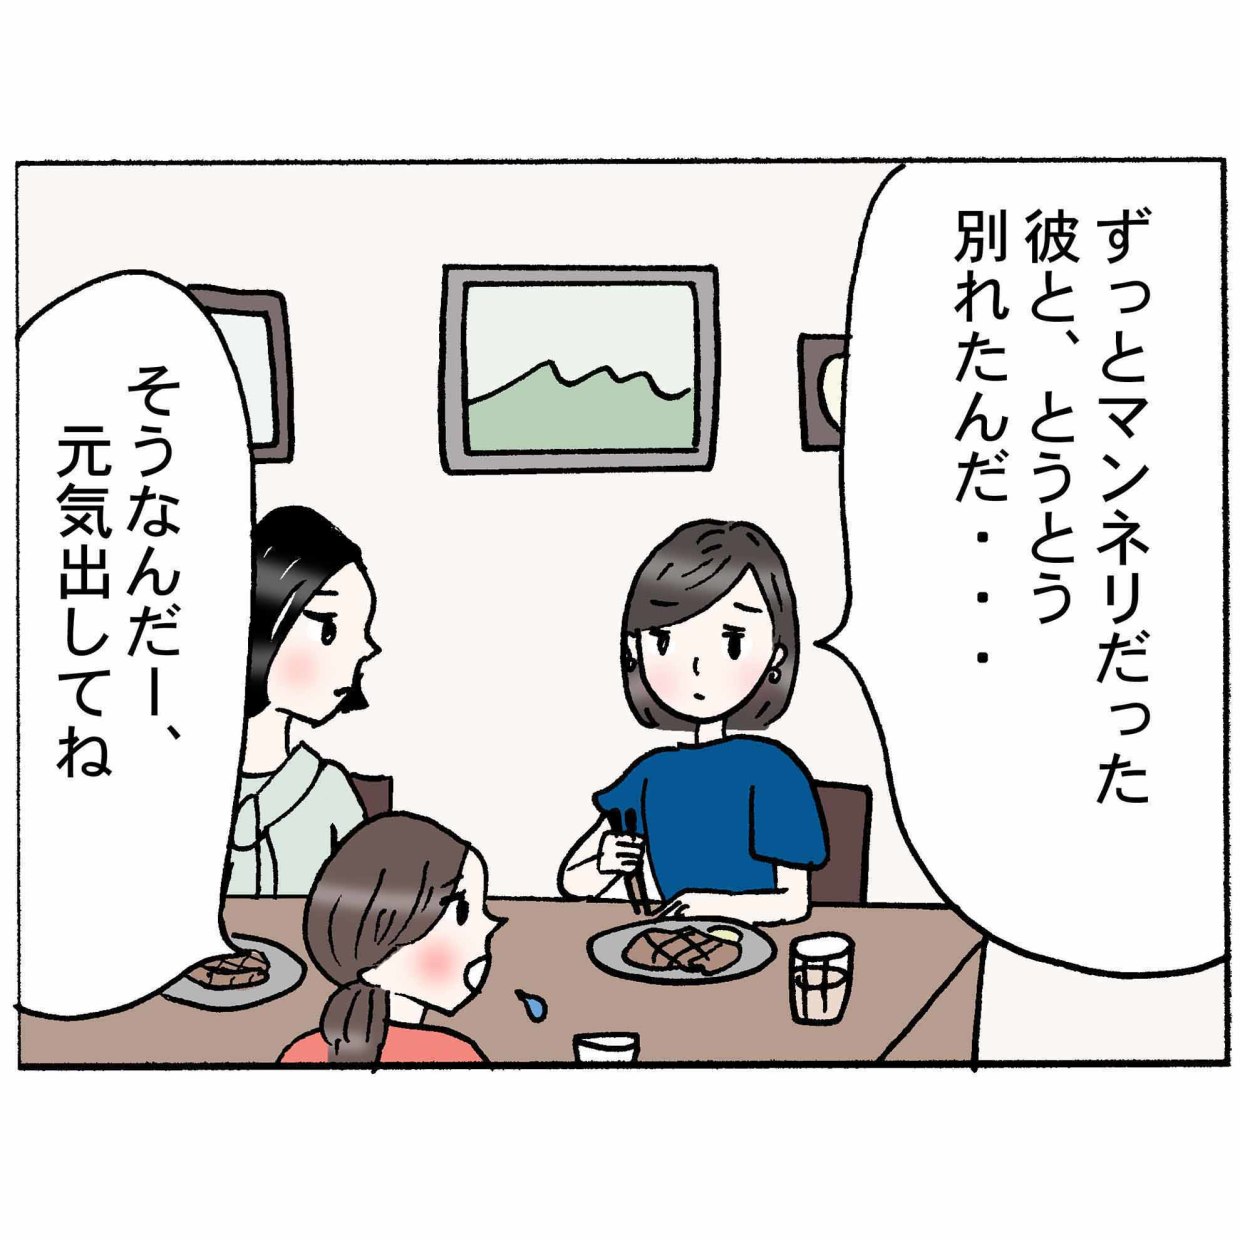 4コマ漫画 “鈴木ゆう子”の日常